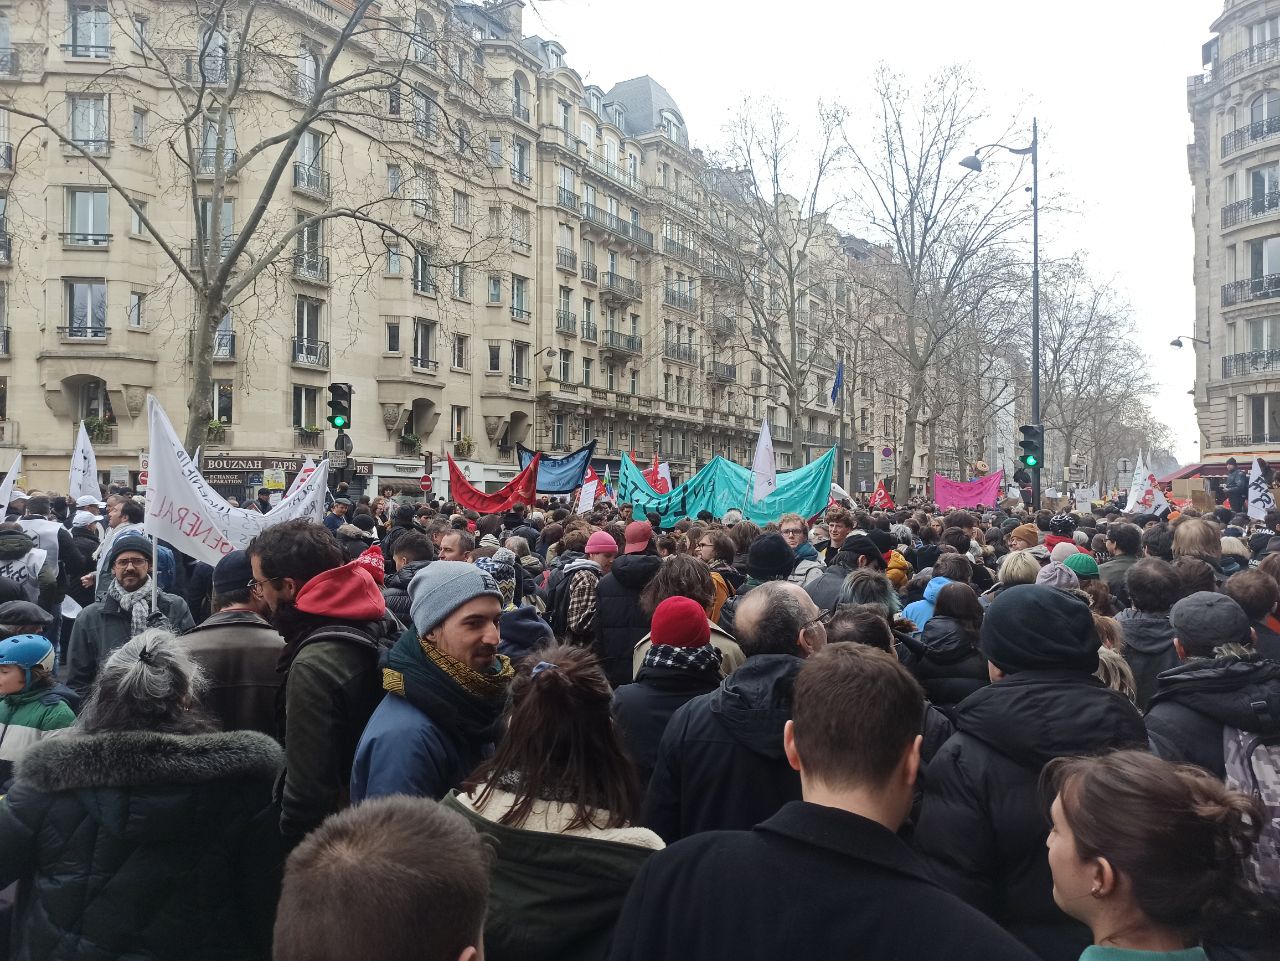 6-й раунд противостояния трудящихся и правительства во Франции на ниве пенсионной реформы рискует стать самым затяжным и напряжённым. Профсоюзы объявили бессрочную забастовку, уличные протесты всё чаще напоминают бойню, накал страстей лишь нарастает